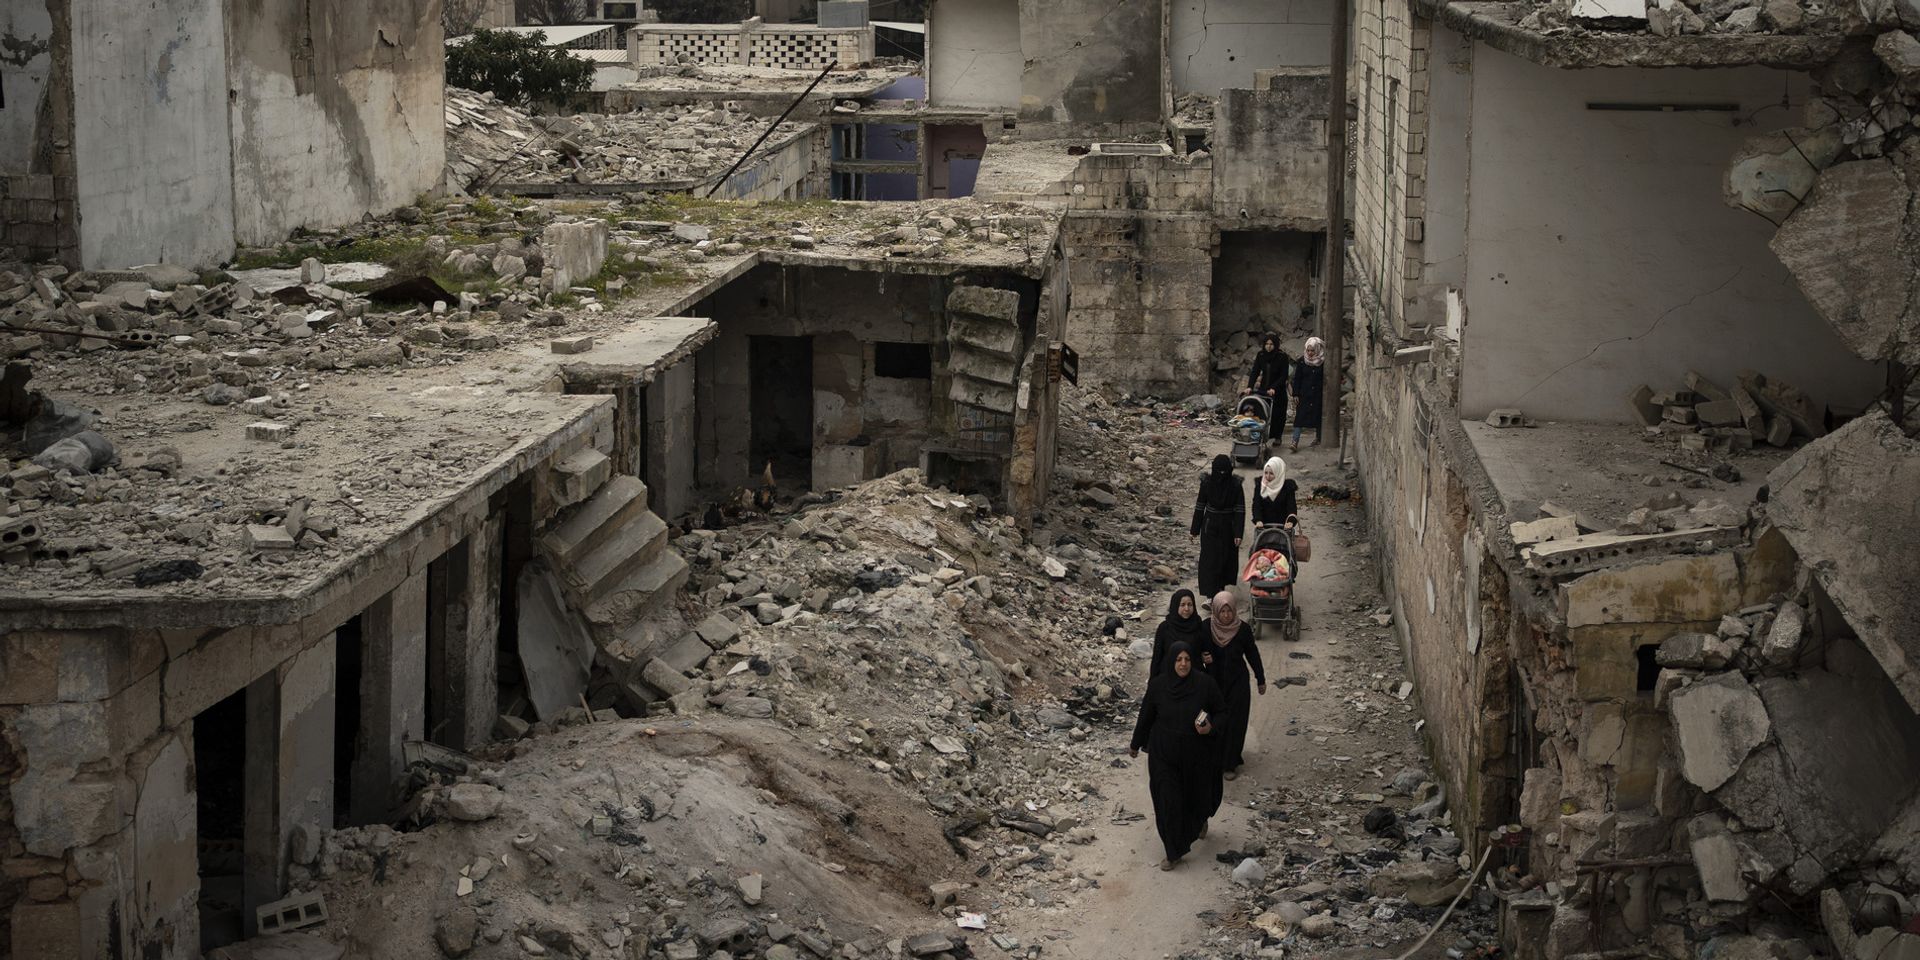  Des femmes marchent avec des poussettes à travers les décombres d'une rue aux maisons effondrées. 